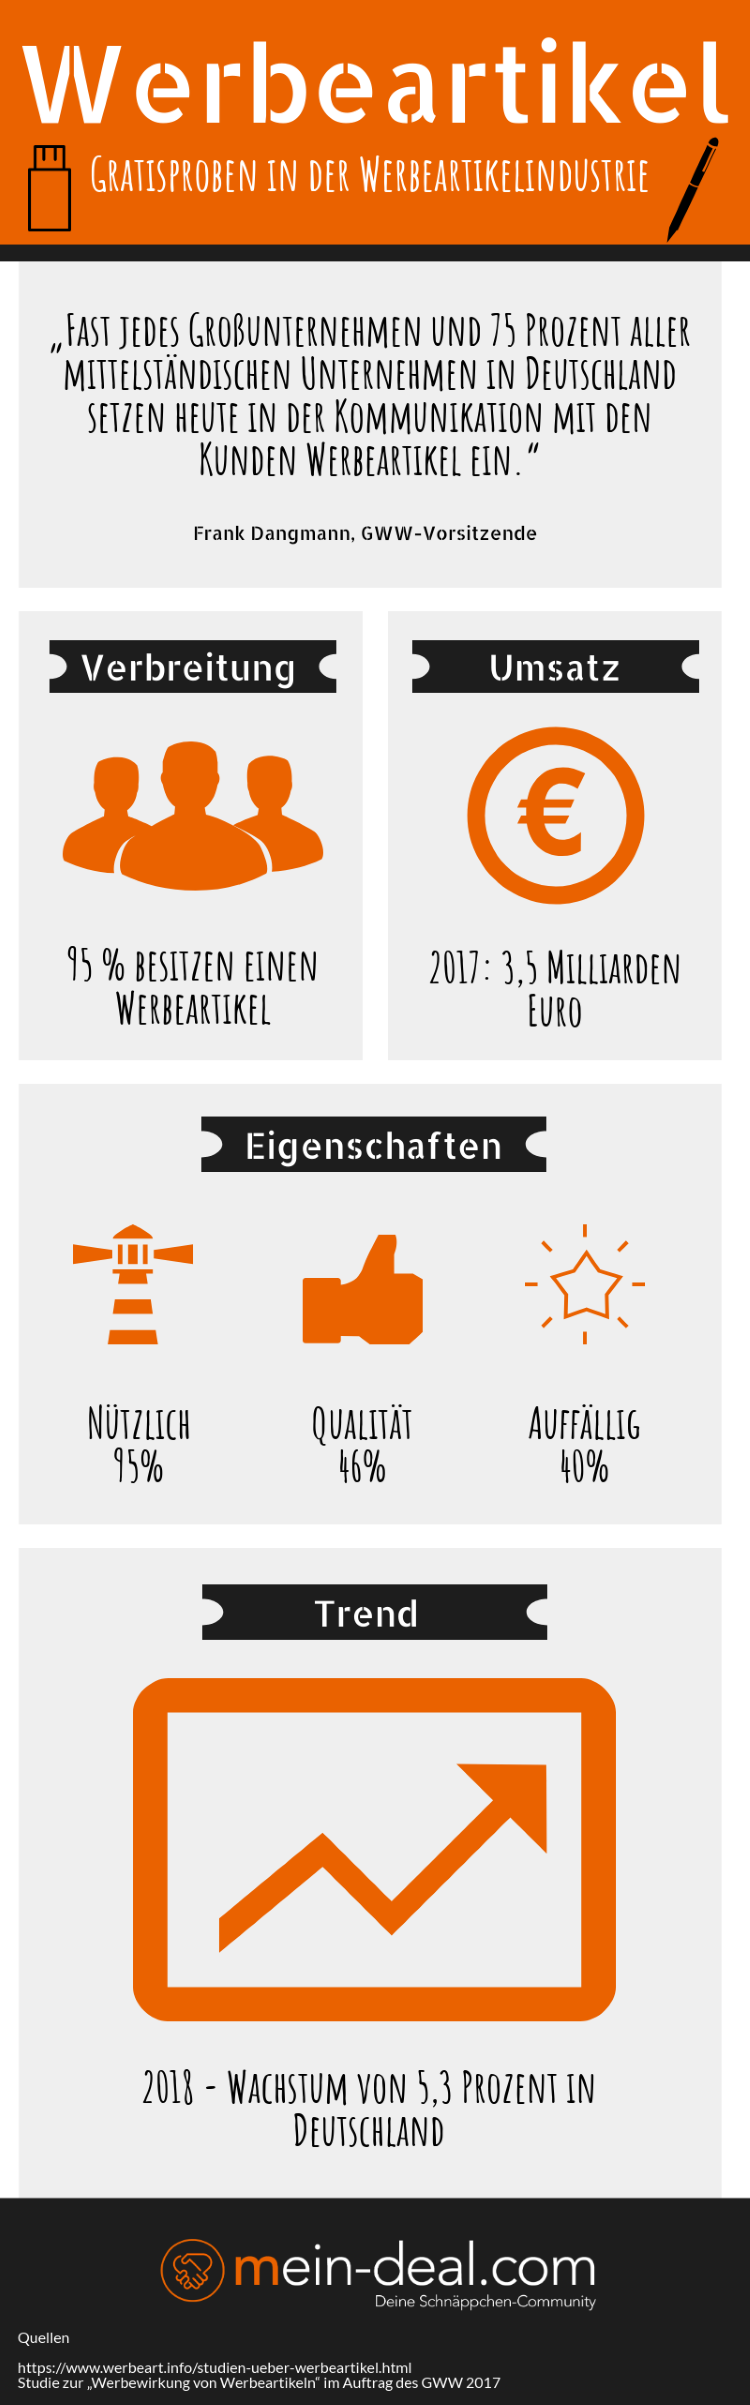 Fast jeder Haushalt in Deutschland besitzt mindestens ein Werbegeschenk. Für 2018 wurde durch PSI ein Wachstum von 5,3 Prozent prognostiziert. Gerade hochwertige und ausgefallene Werbegeschenke werden immer beliebter. 